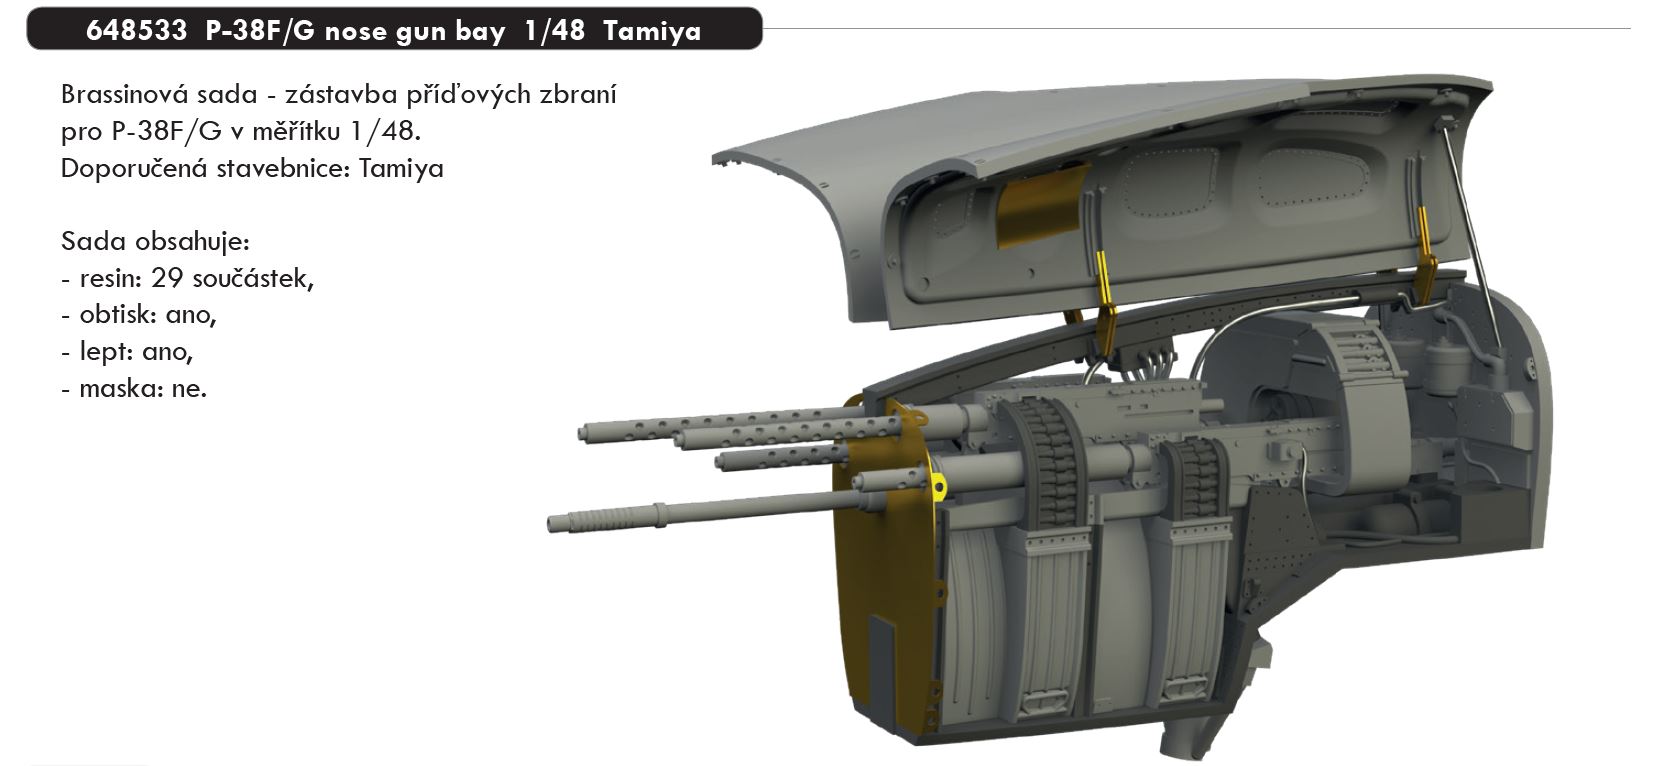 1/48 P-38F/G nose gun bay (TAMIYA)